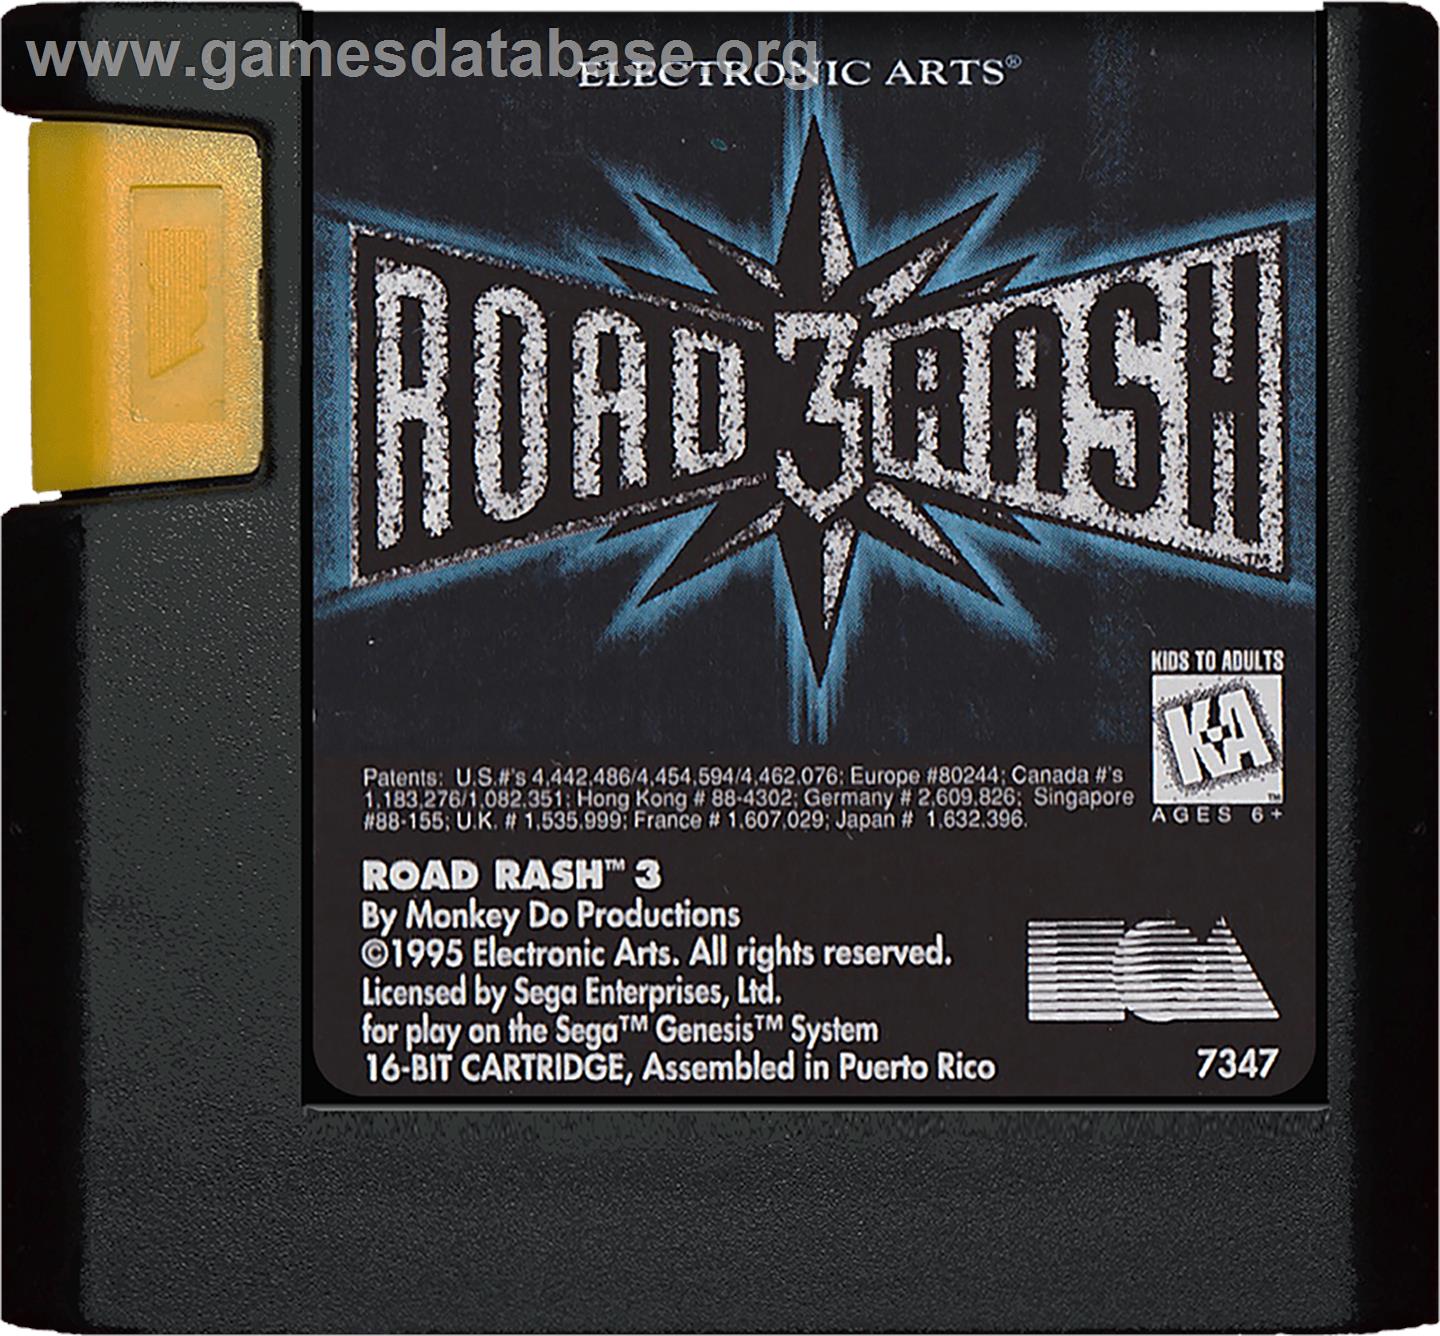 Road Rash 3: Tour De Force - Sega Genesis - Artwork - Cartridge